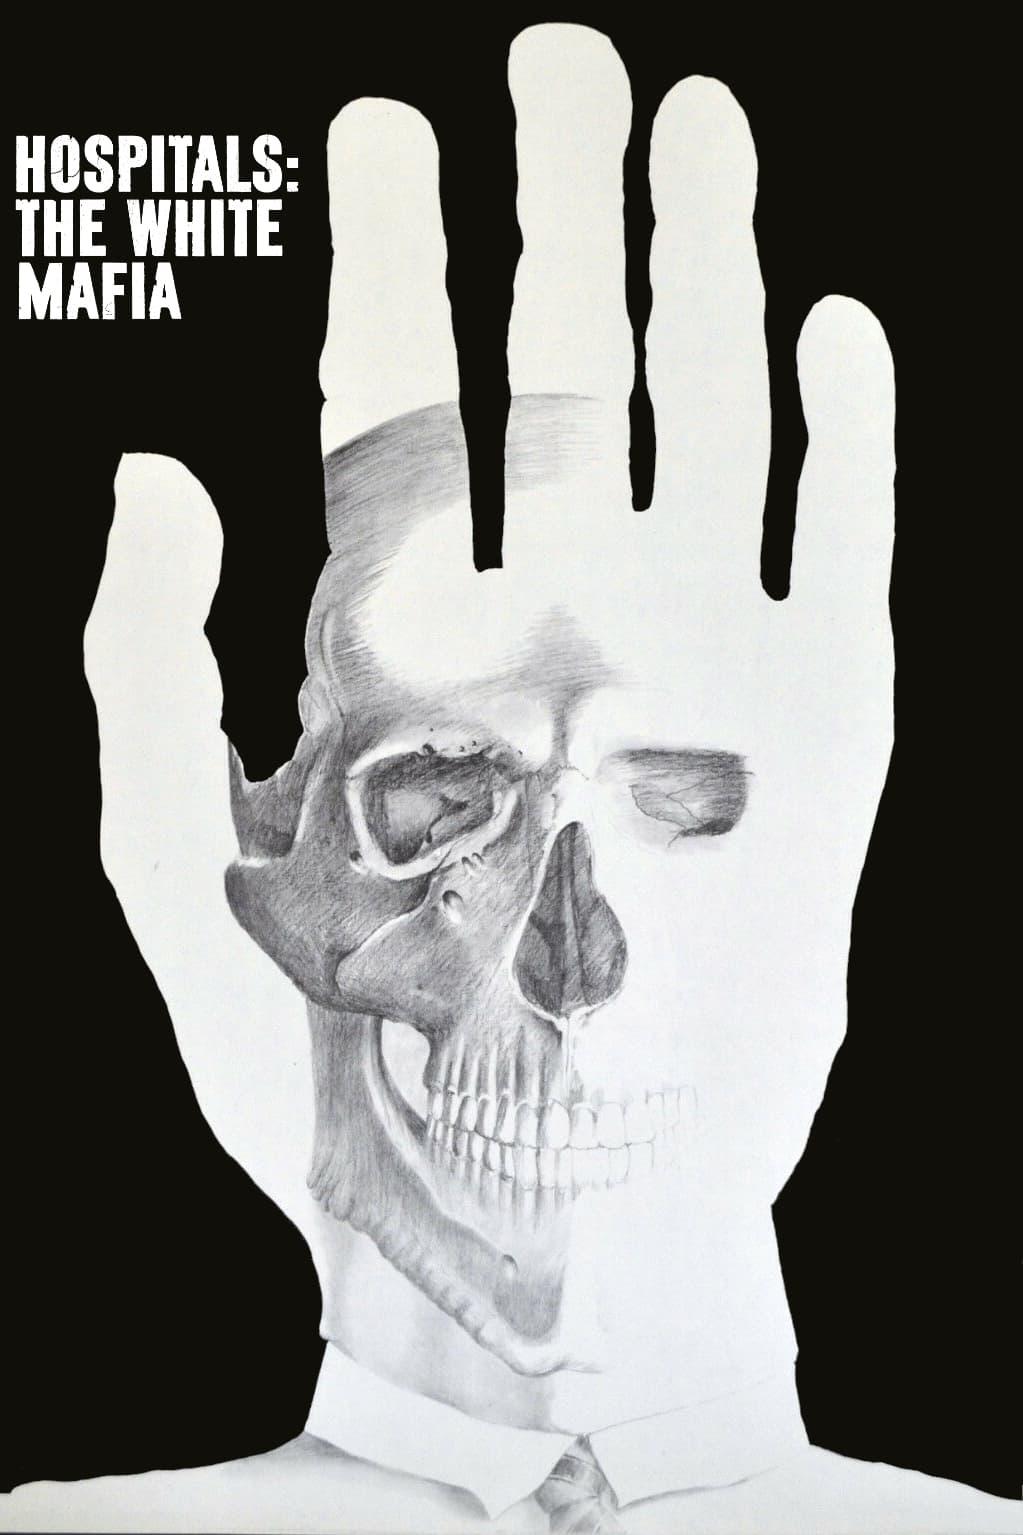 Hospitals: The White Mafia poster